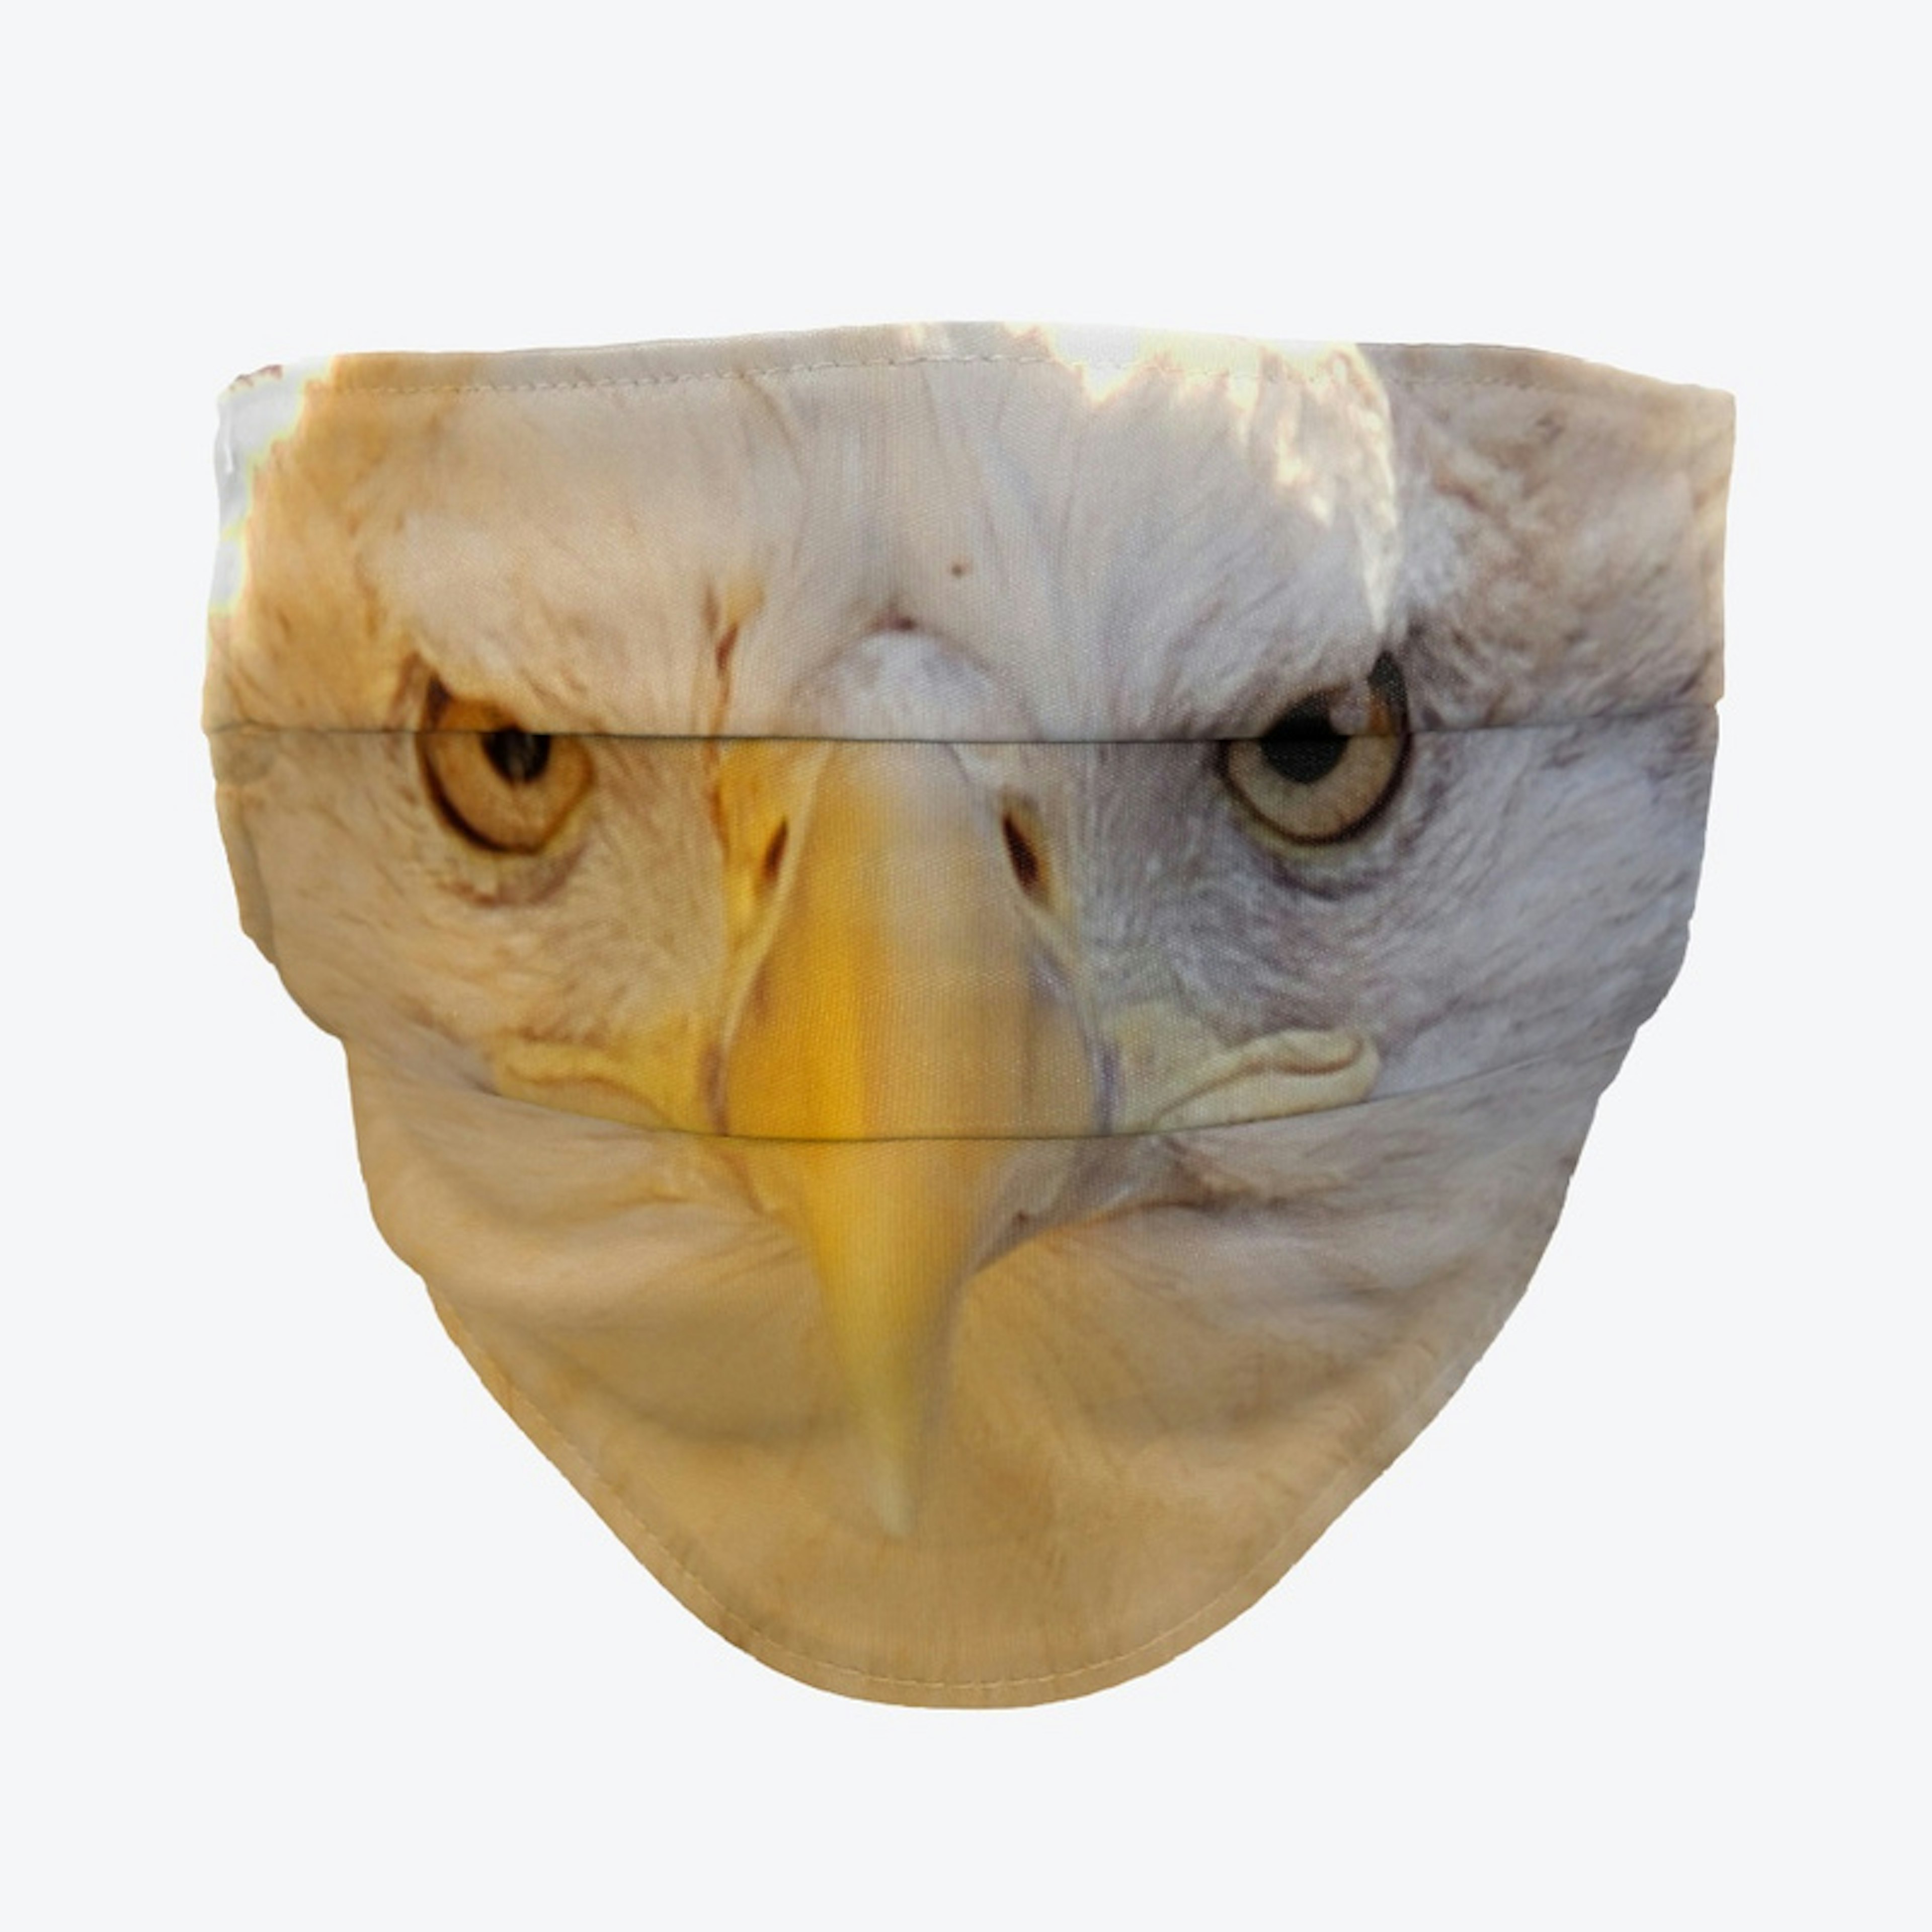 Bald Eagle Mask